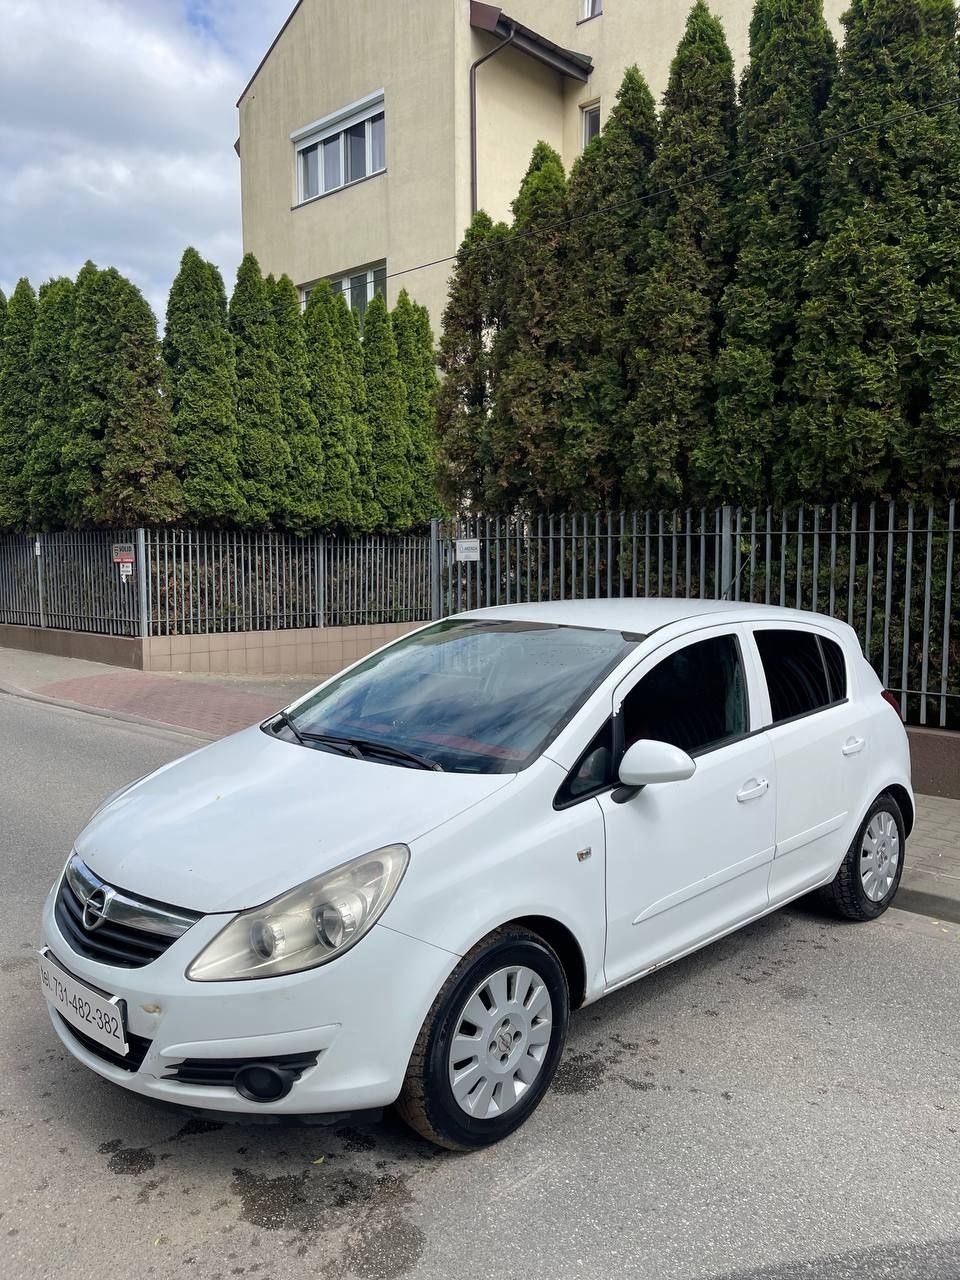 Na Sprzedaż Opel Corsa 1.3d dobry stan/wygodny/zamiana/raty